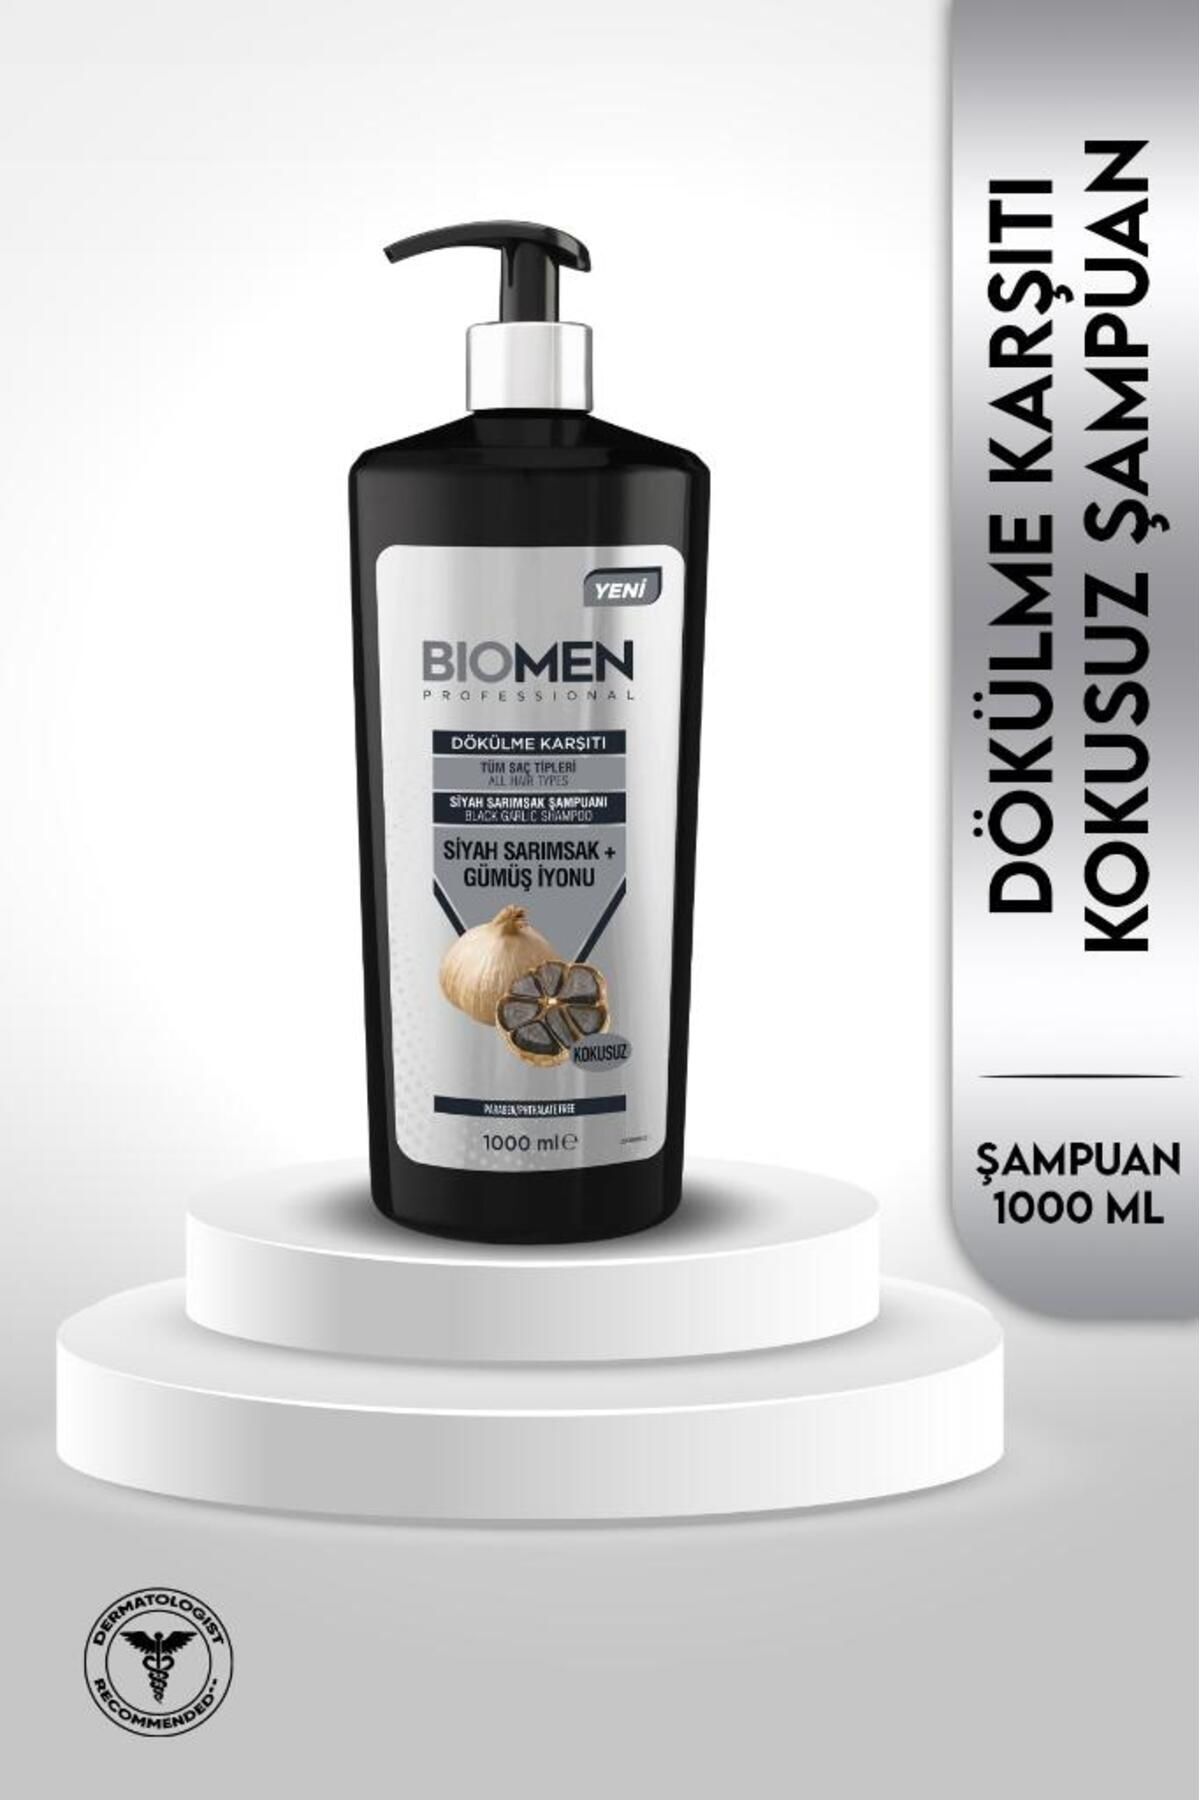 Biomen Professional Siyah Sarımsak&gümüş Iyonu Dökülme Karşıtı Şampuan 1000 ml